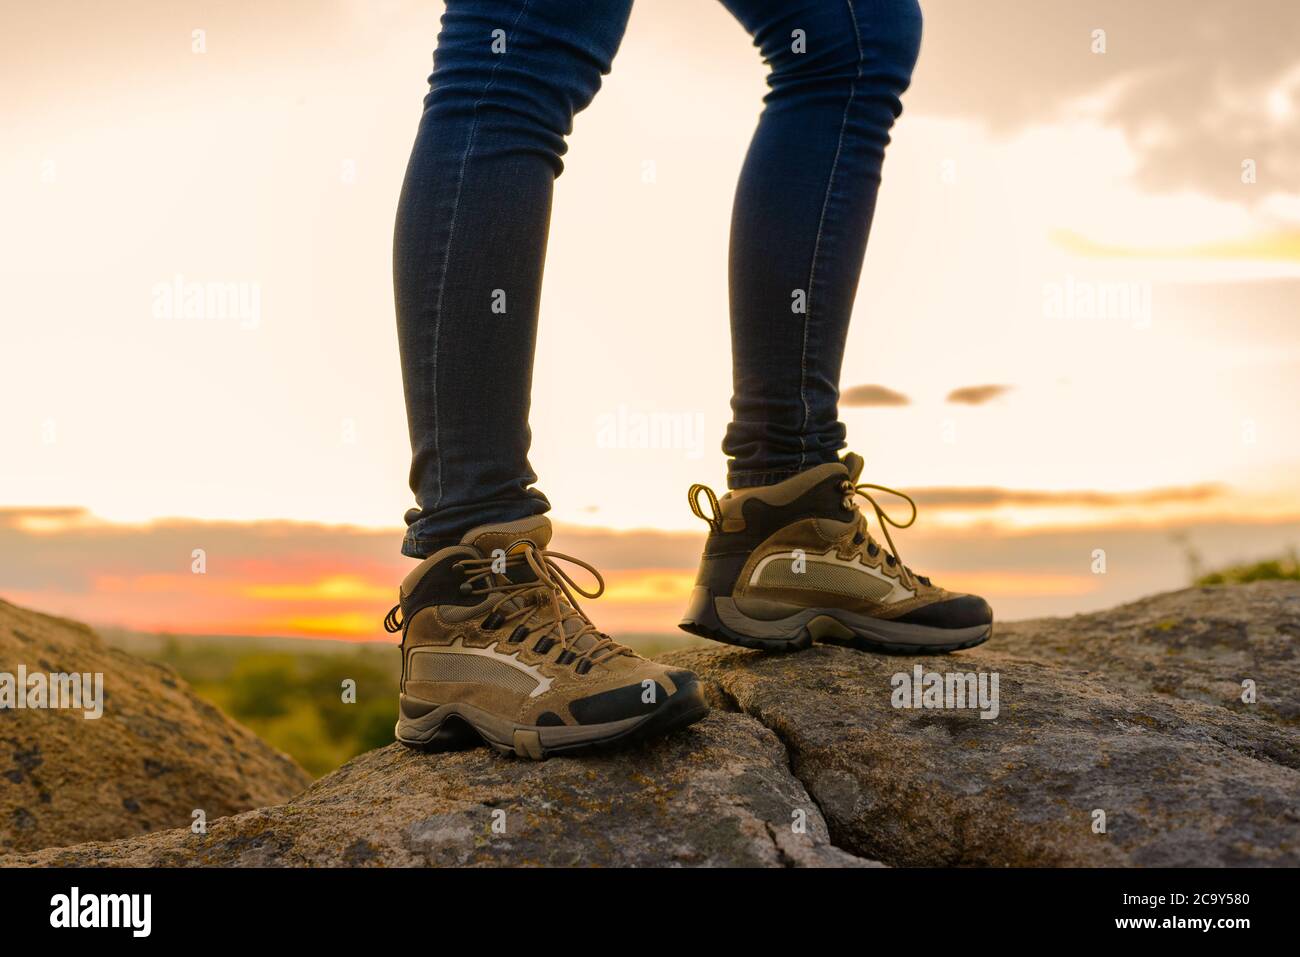 Die Beine des Wanderers auf dem Rocky Trail bei Sonnenuntergang im Sommer. Reise- und Abenteuerkonzept. Stockfoto